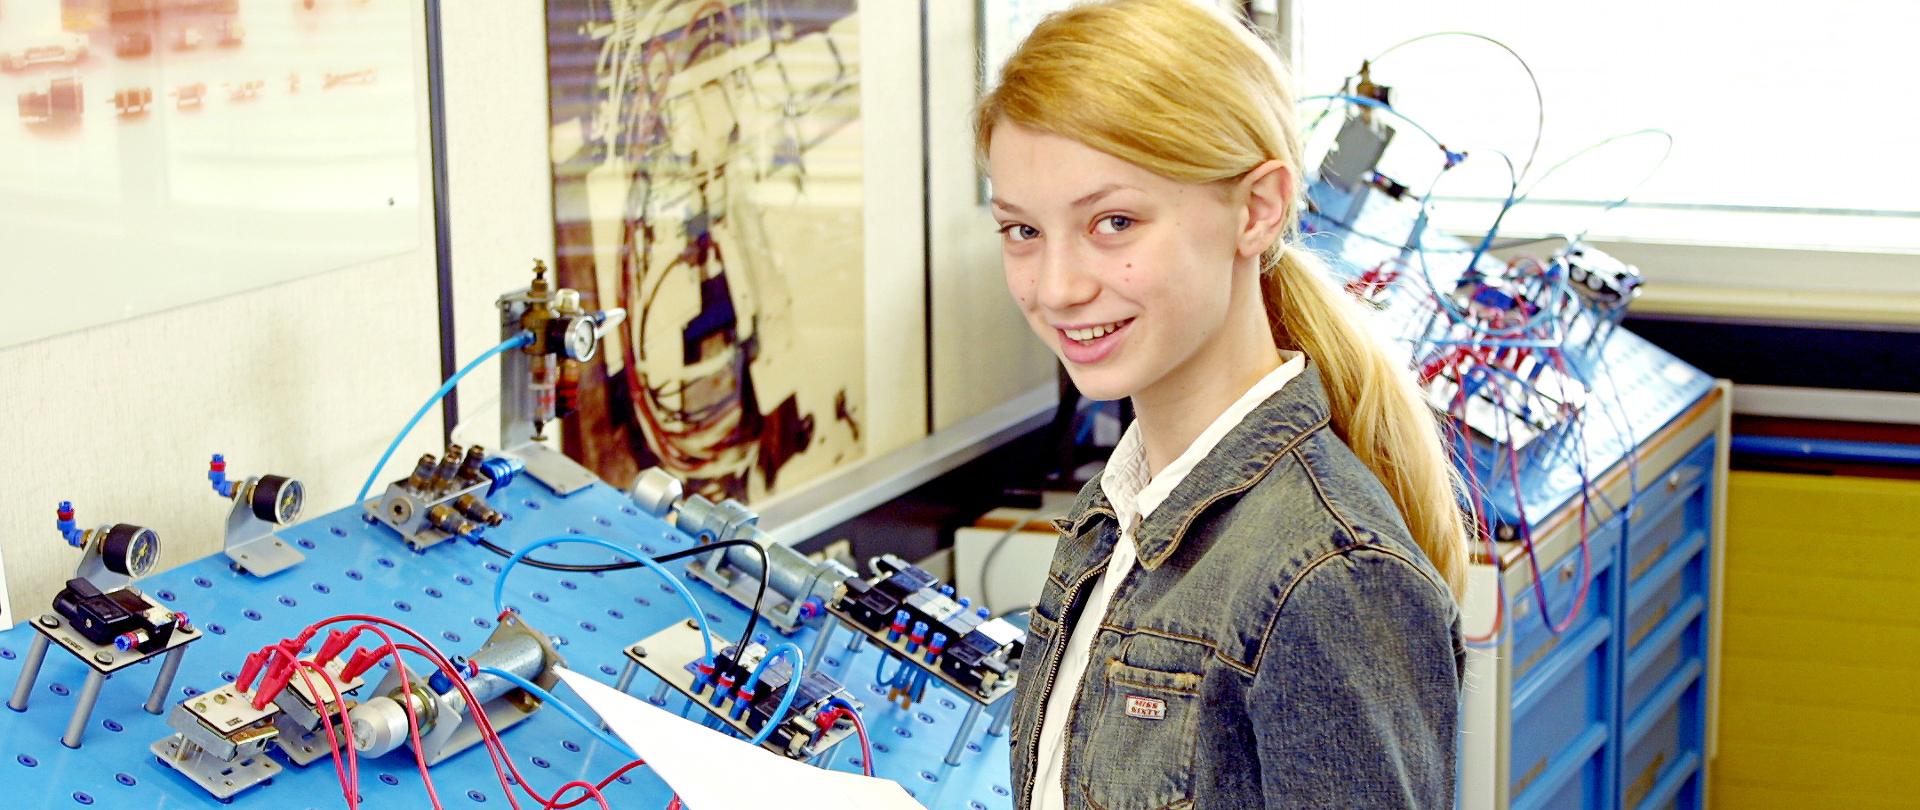 Młoda dziewczyna łączy obwód elektryczny na płycie prototypowej.